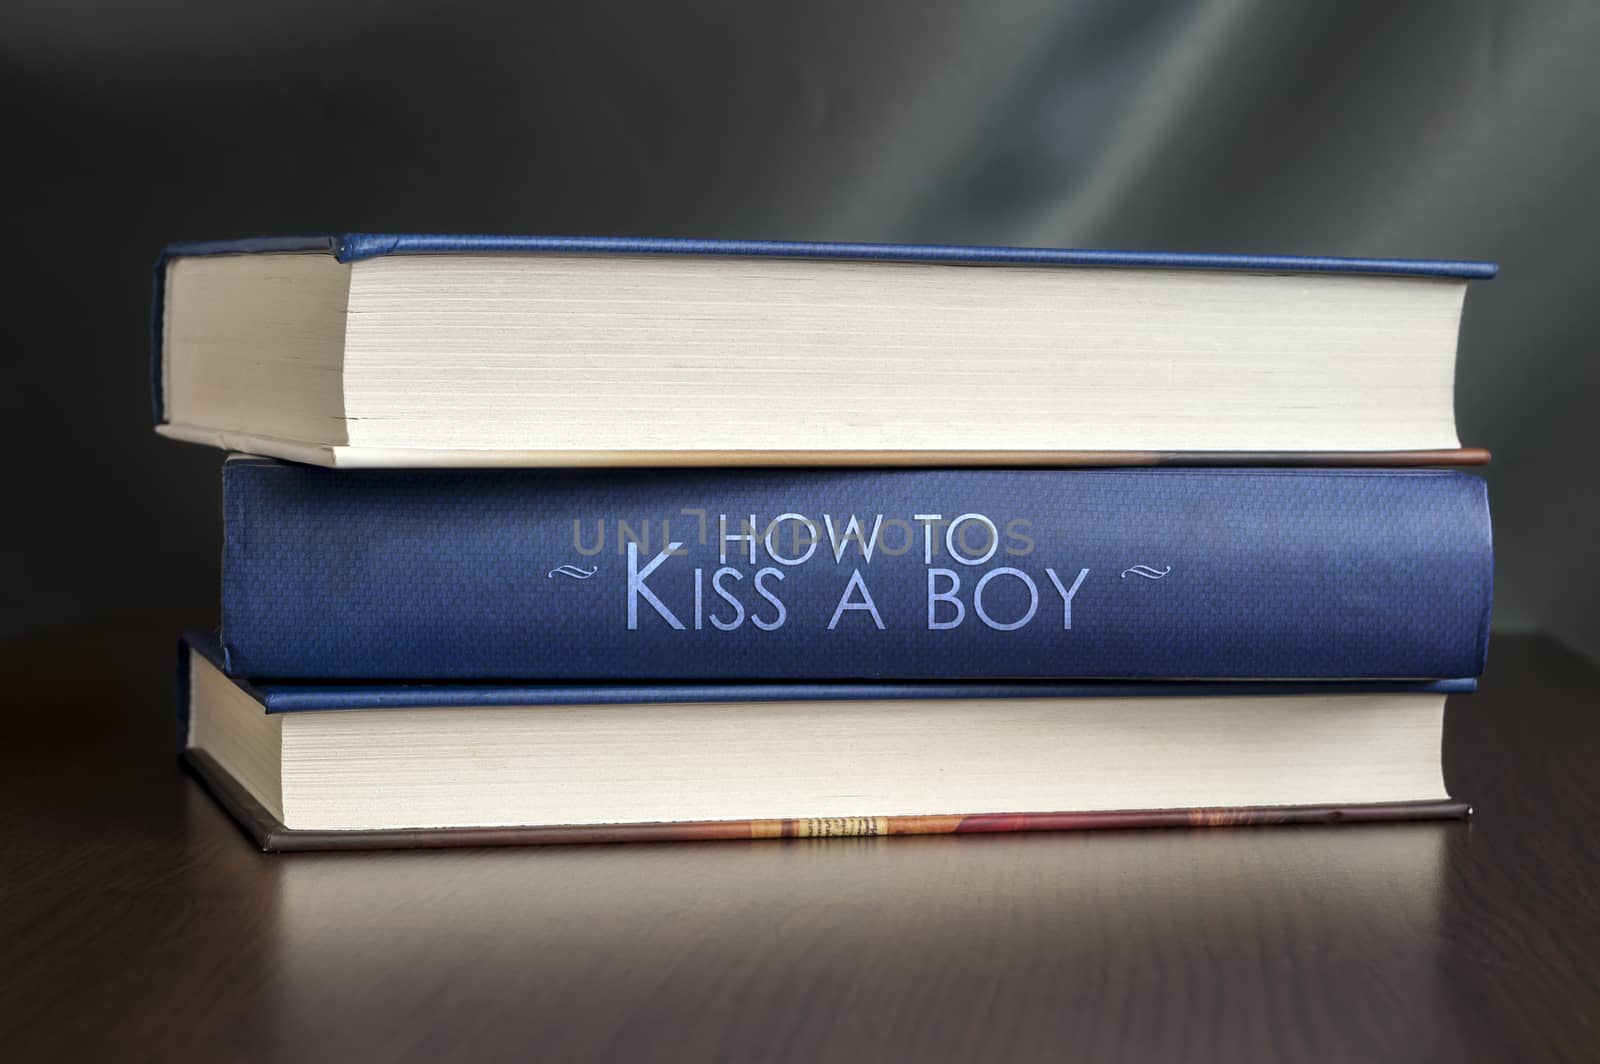 How to kiss a boy. Book concept. by maxmitzu